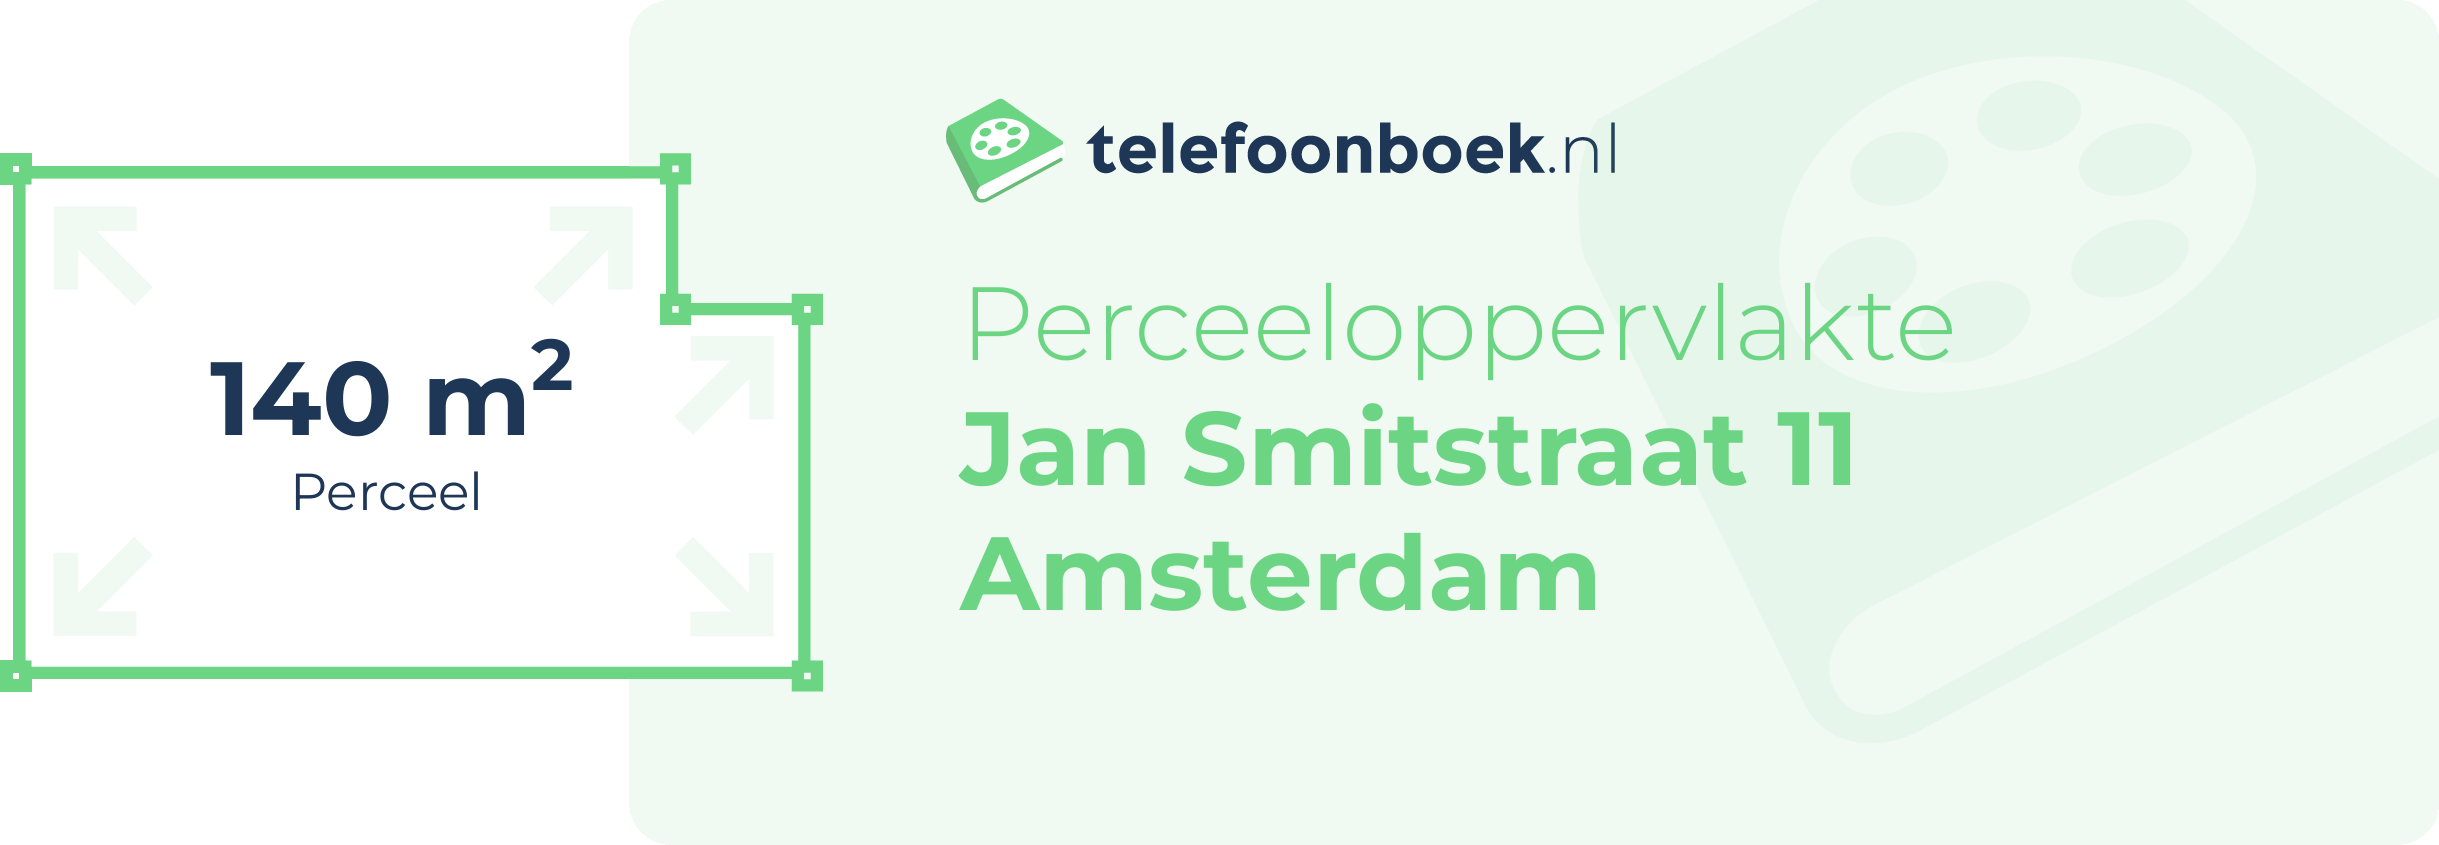 Perceeloppervlakte Jan Smitstraat 11 Amsterdam